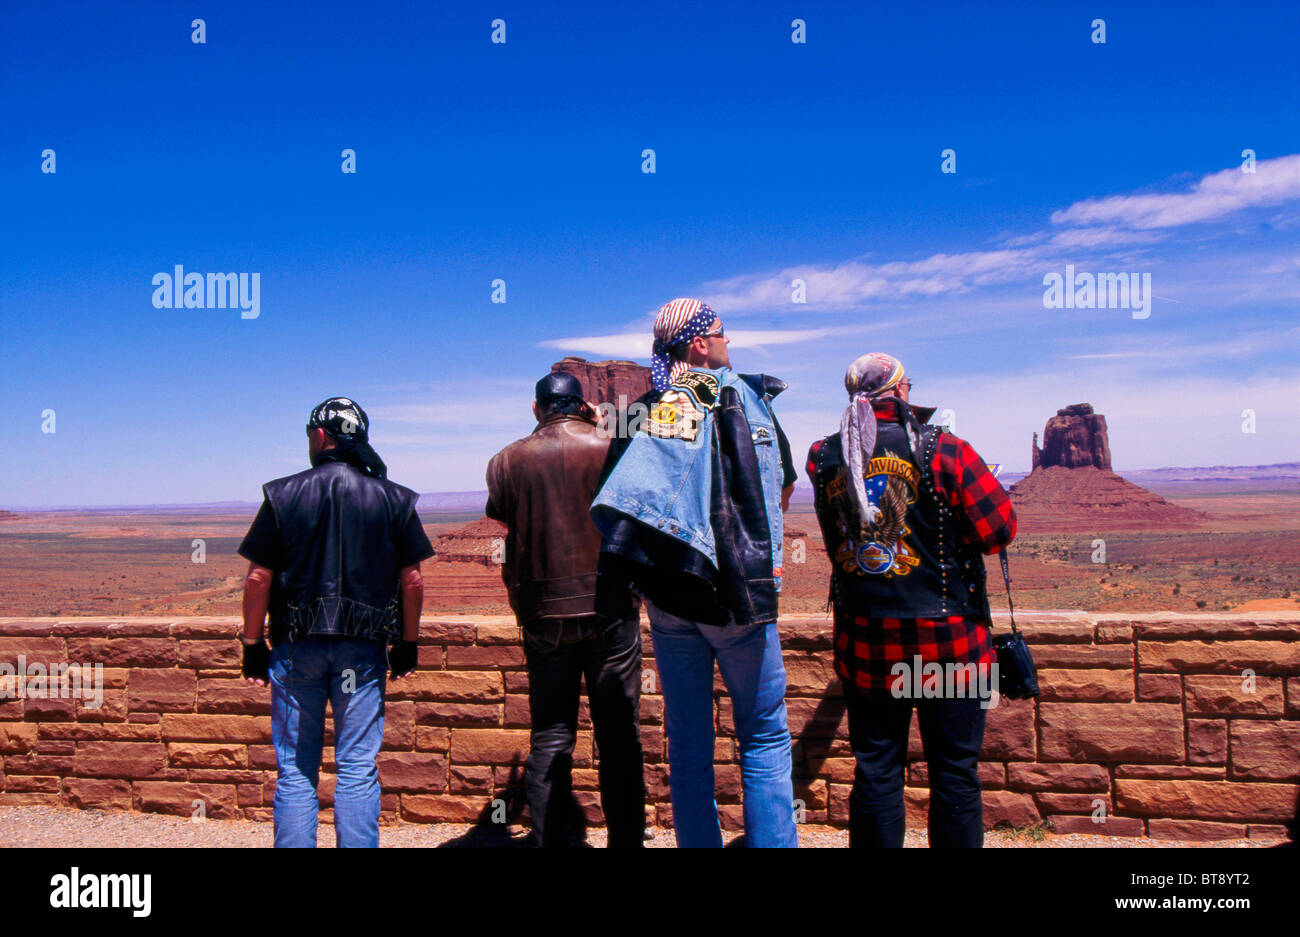 Affichage des bikers paysage Monument Valley en Arizona près de la frontière de l'Utah, États-Unis d'Amérique Banque D'Images